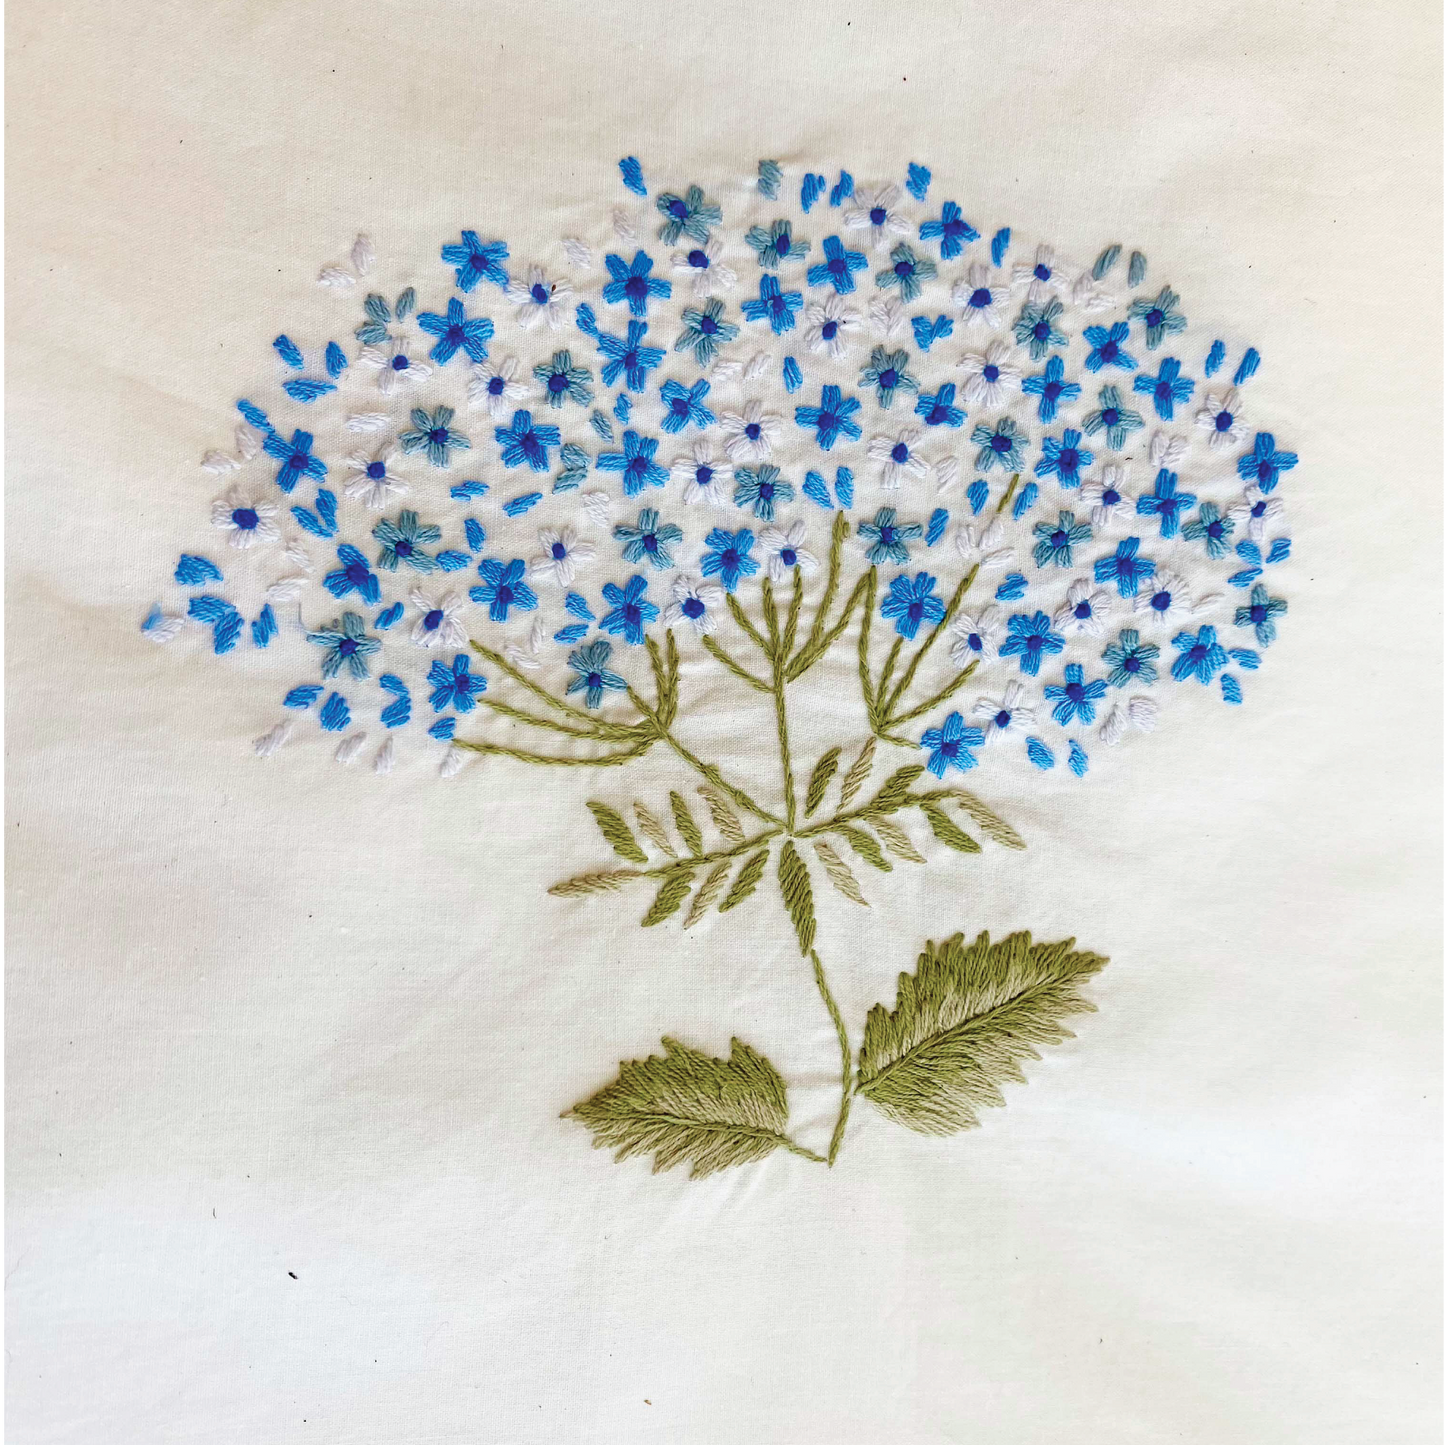 Embroidered Hydrangeas on Italian Linen